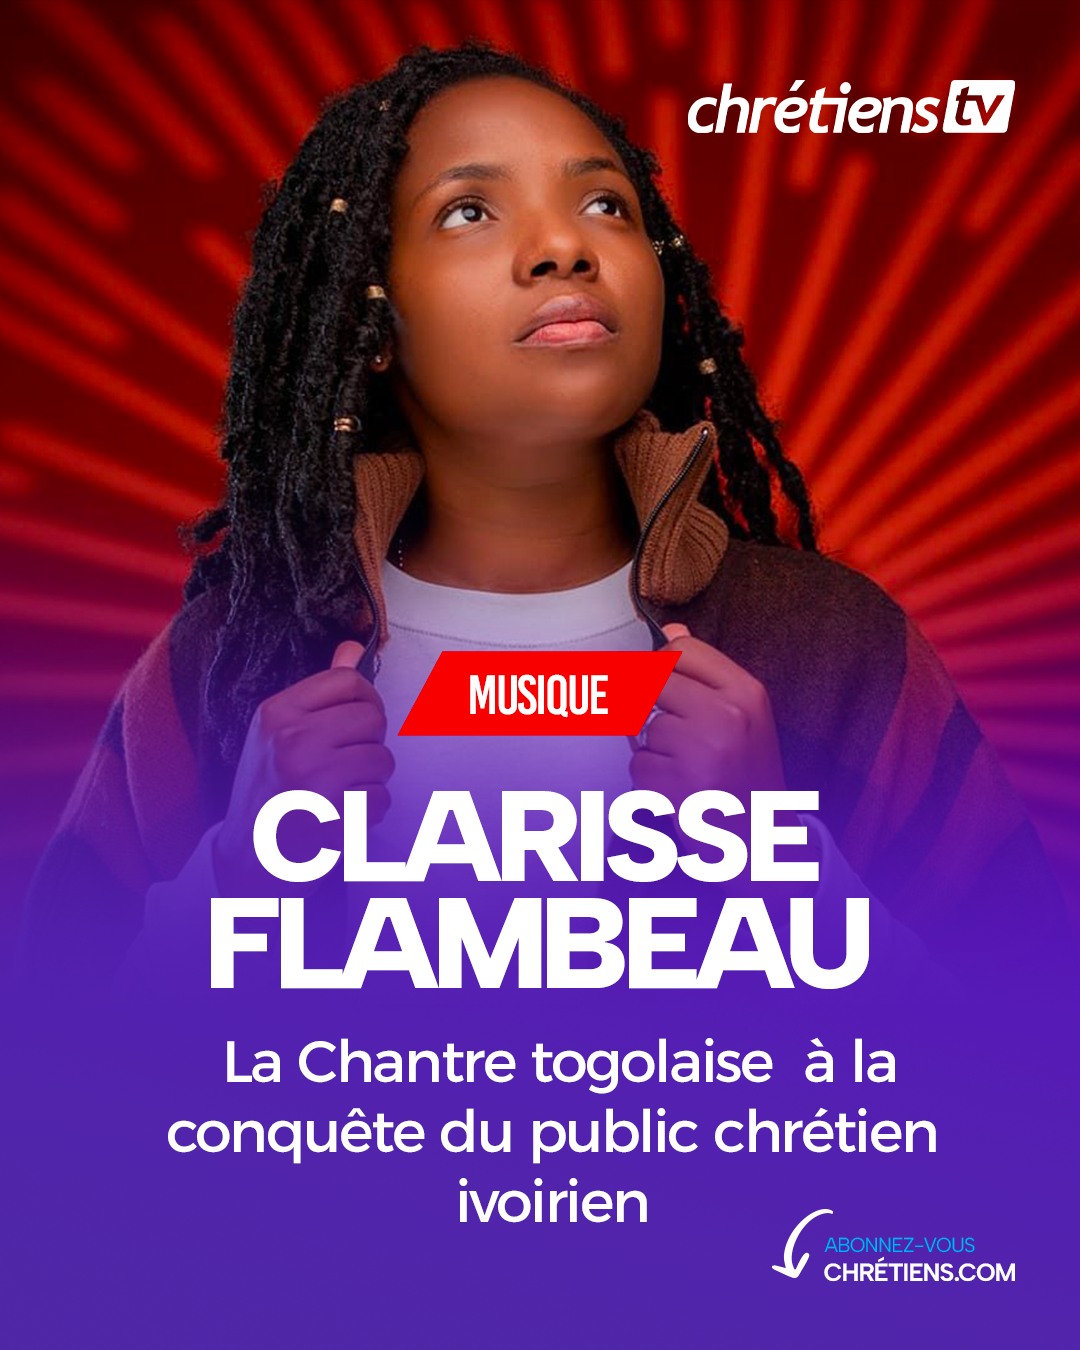 La musique gospel togolaise s'exporte en Côte d'Ivoire avec éclat. Clarisse Flambeau, la nouvelle étoile montante de la musique chrétienne togolaise, est en Côte d'Ivoire pour présenter son tout premier album au public ivoirien.